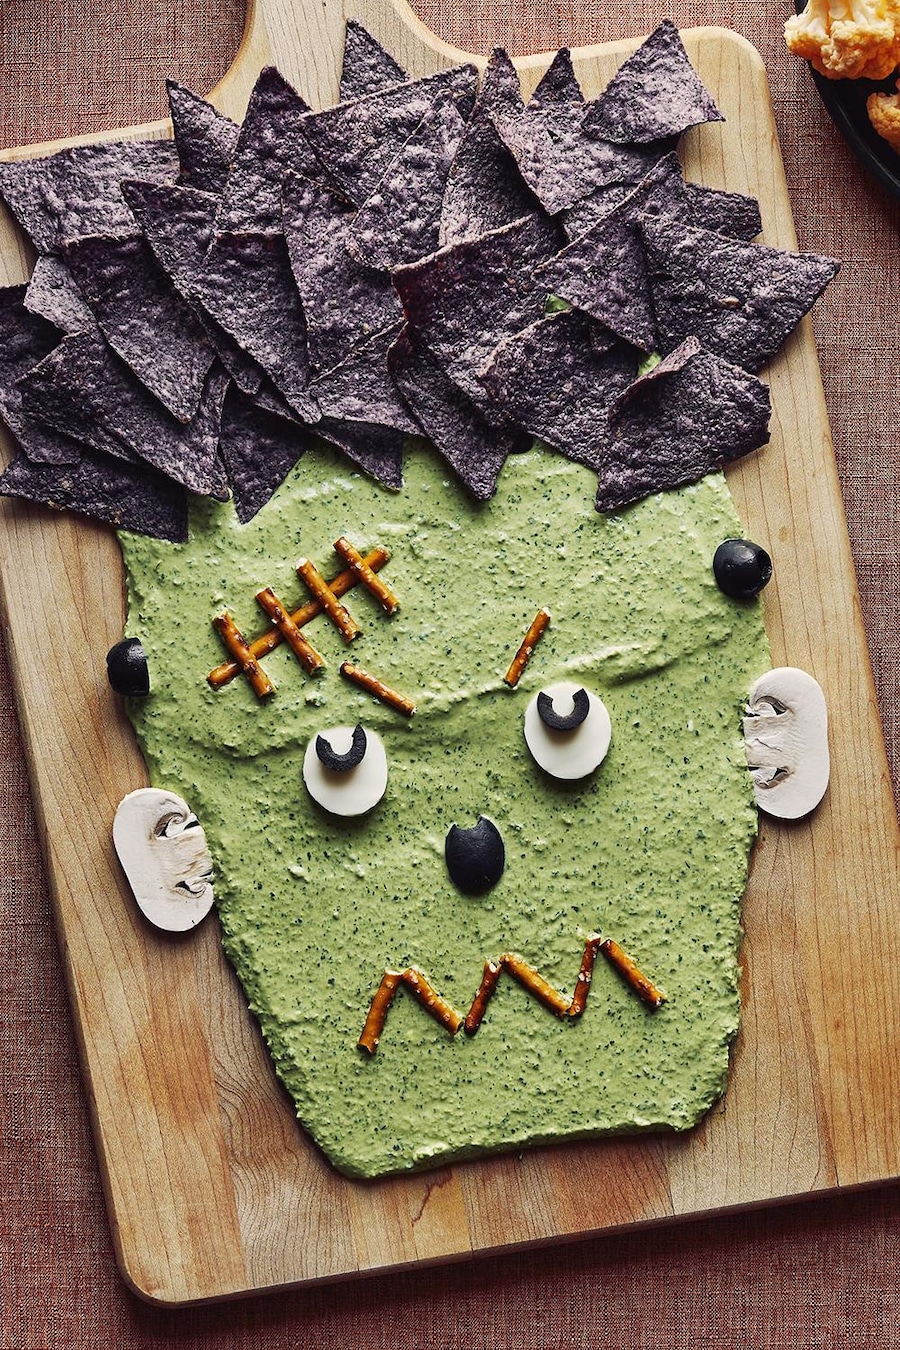 Une trempette en forme de visage de Frankenstein sur une planche de bois est accompagnée d’un bol de trempette, d’un bol de pretzels, d’un bol de croustilles de maïs bleu et de deux assiettes de légumes.